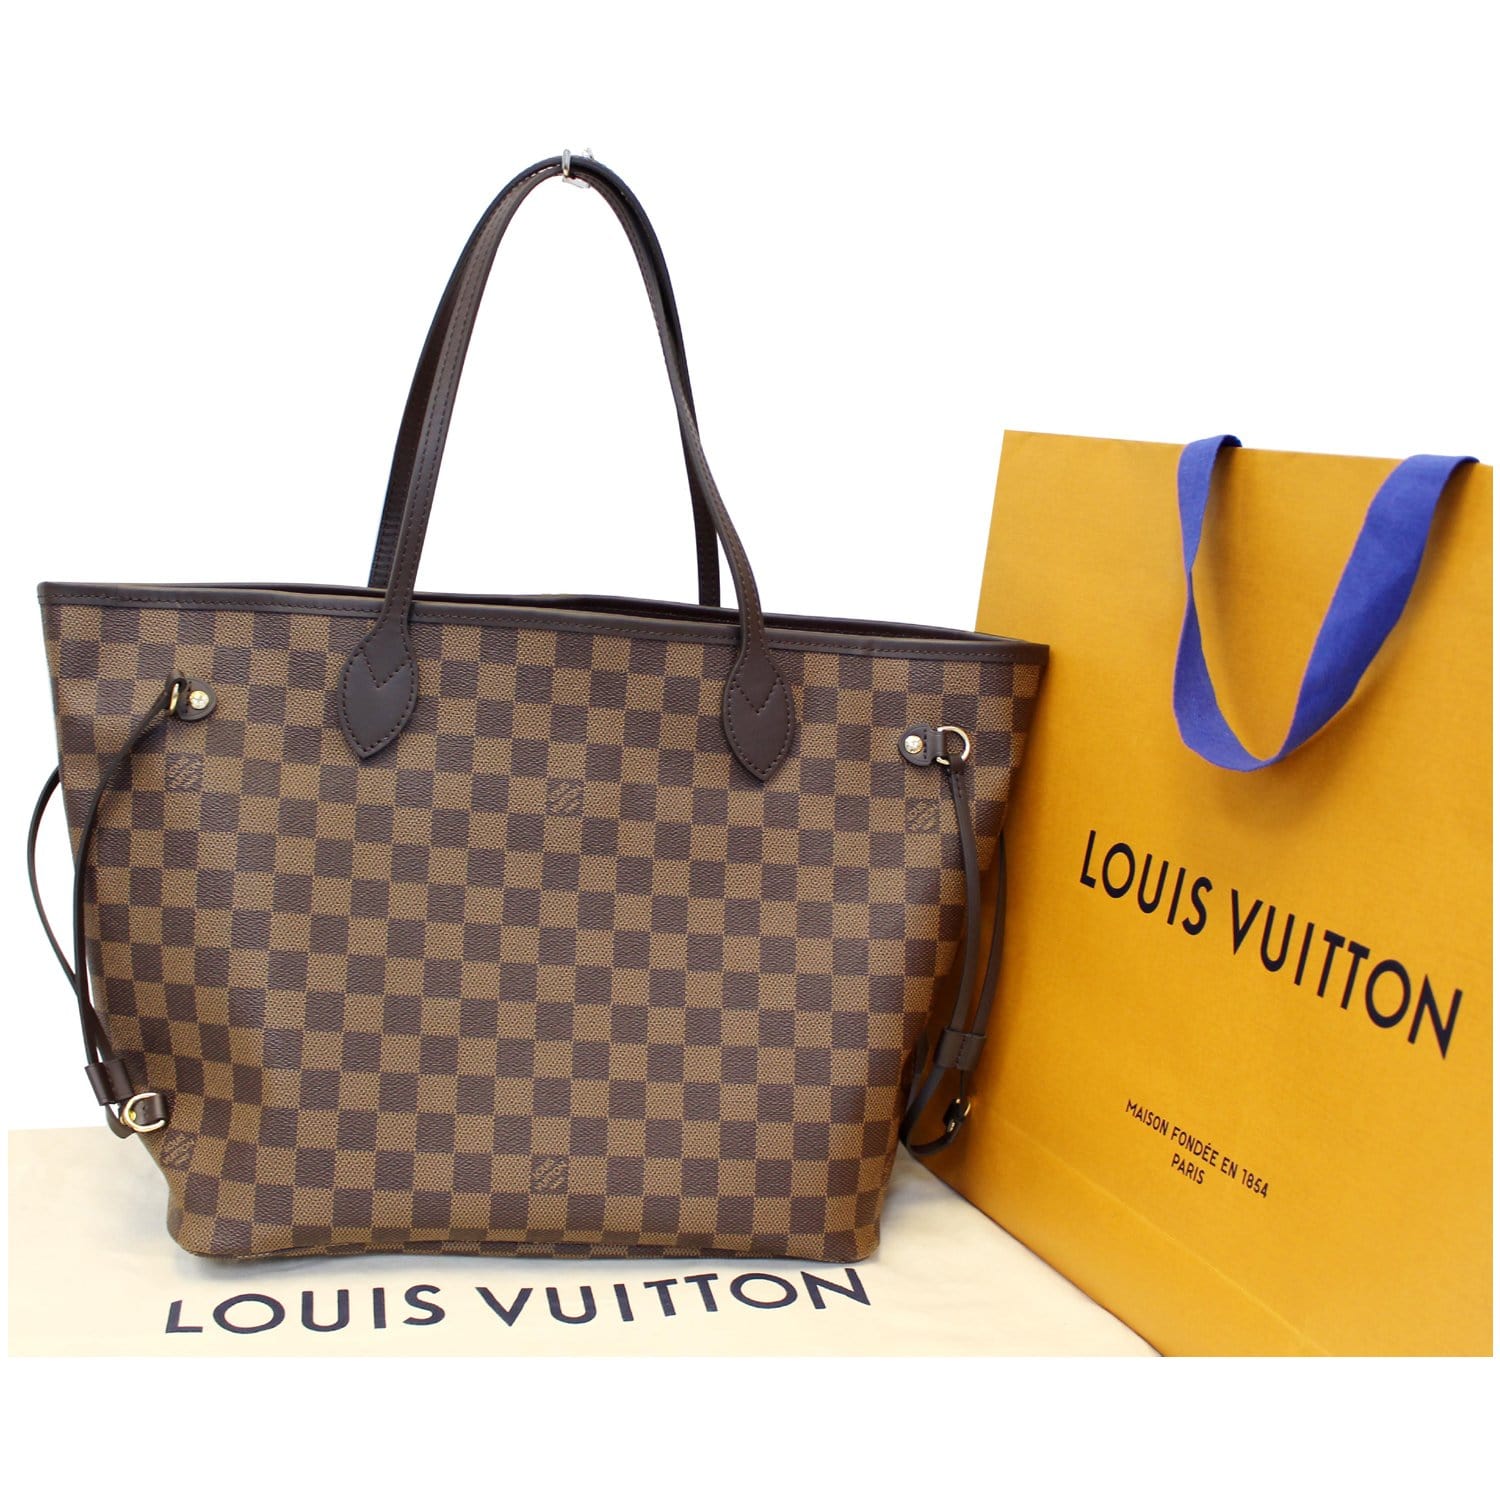 Louis Vuitton Neverfull MM Damier Ebene Tote Handbag